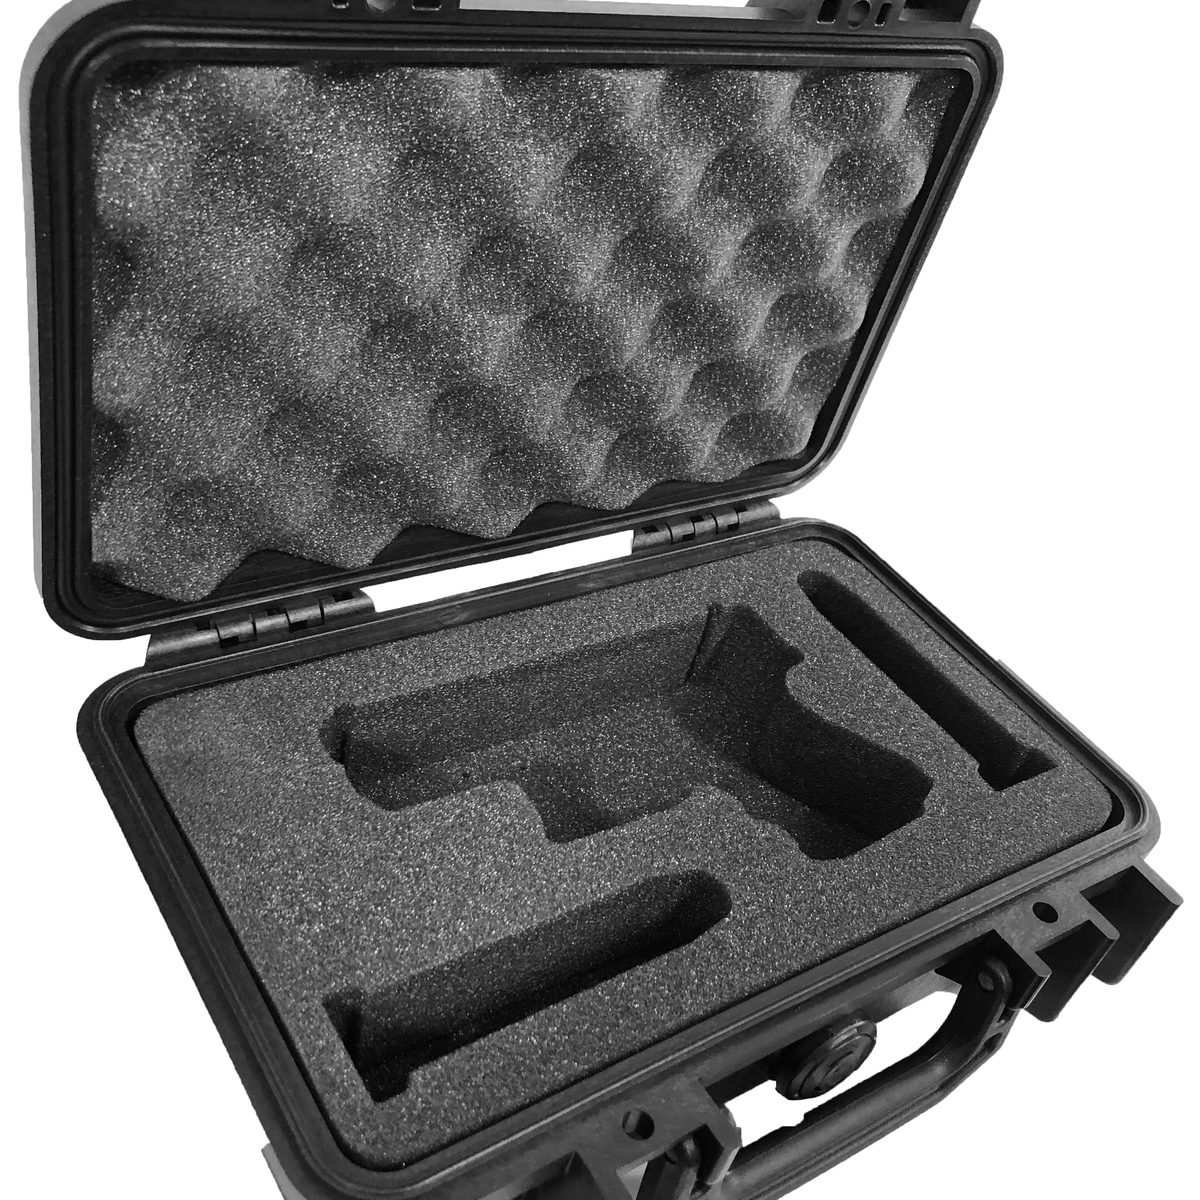 Pelican Case 1170 Custom Foam Insert for Smith & Wesson J-Frame